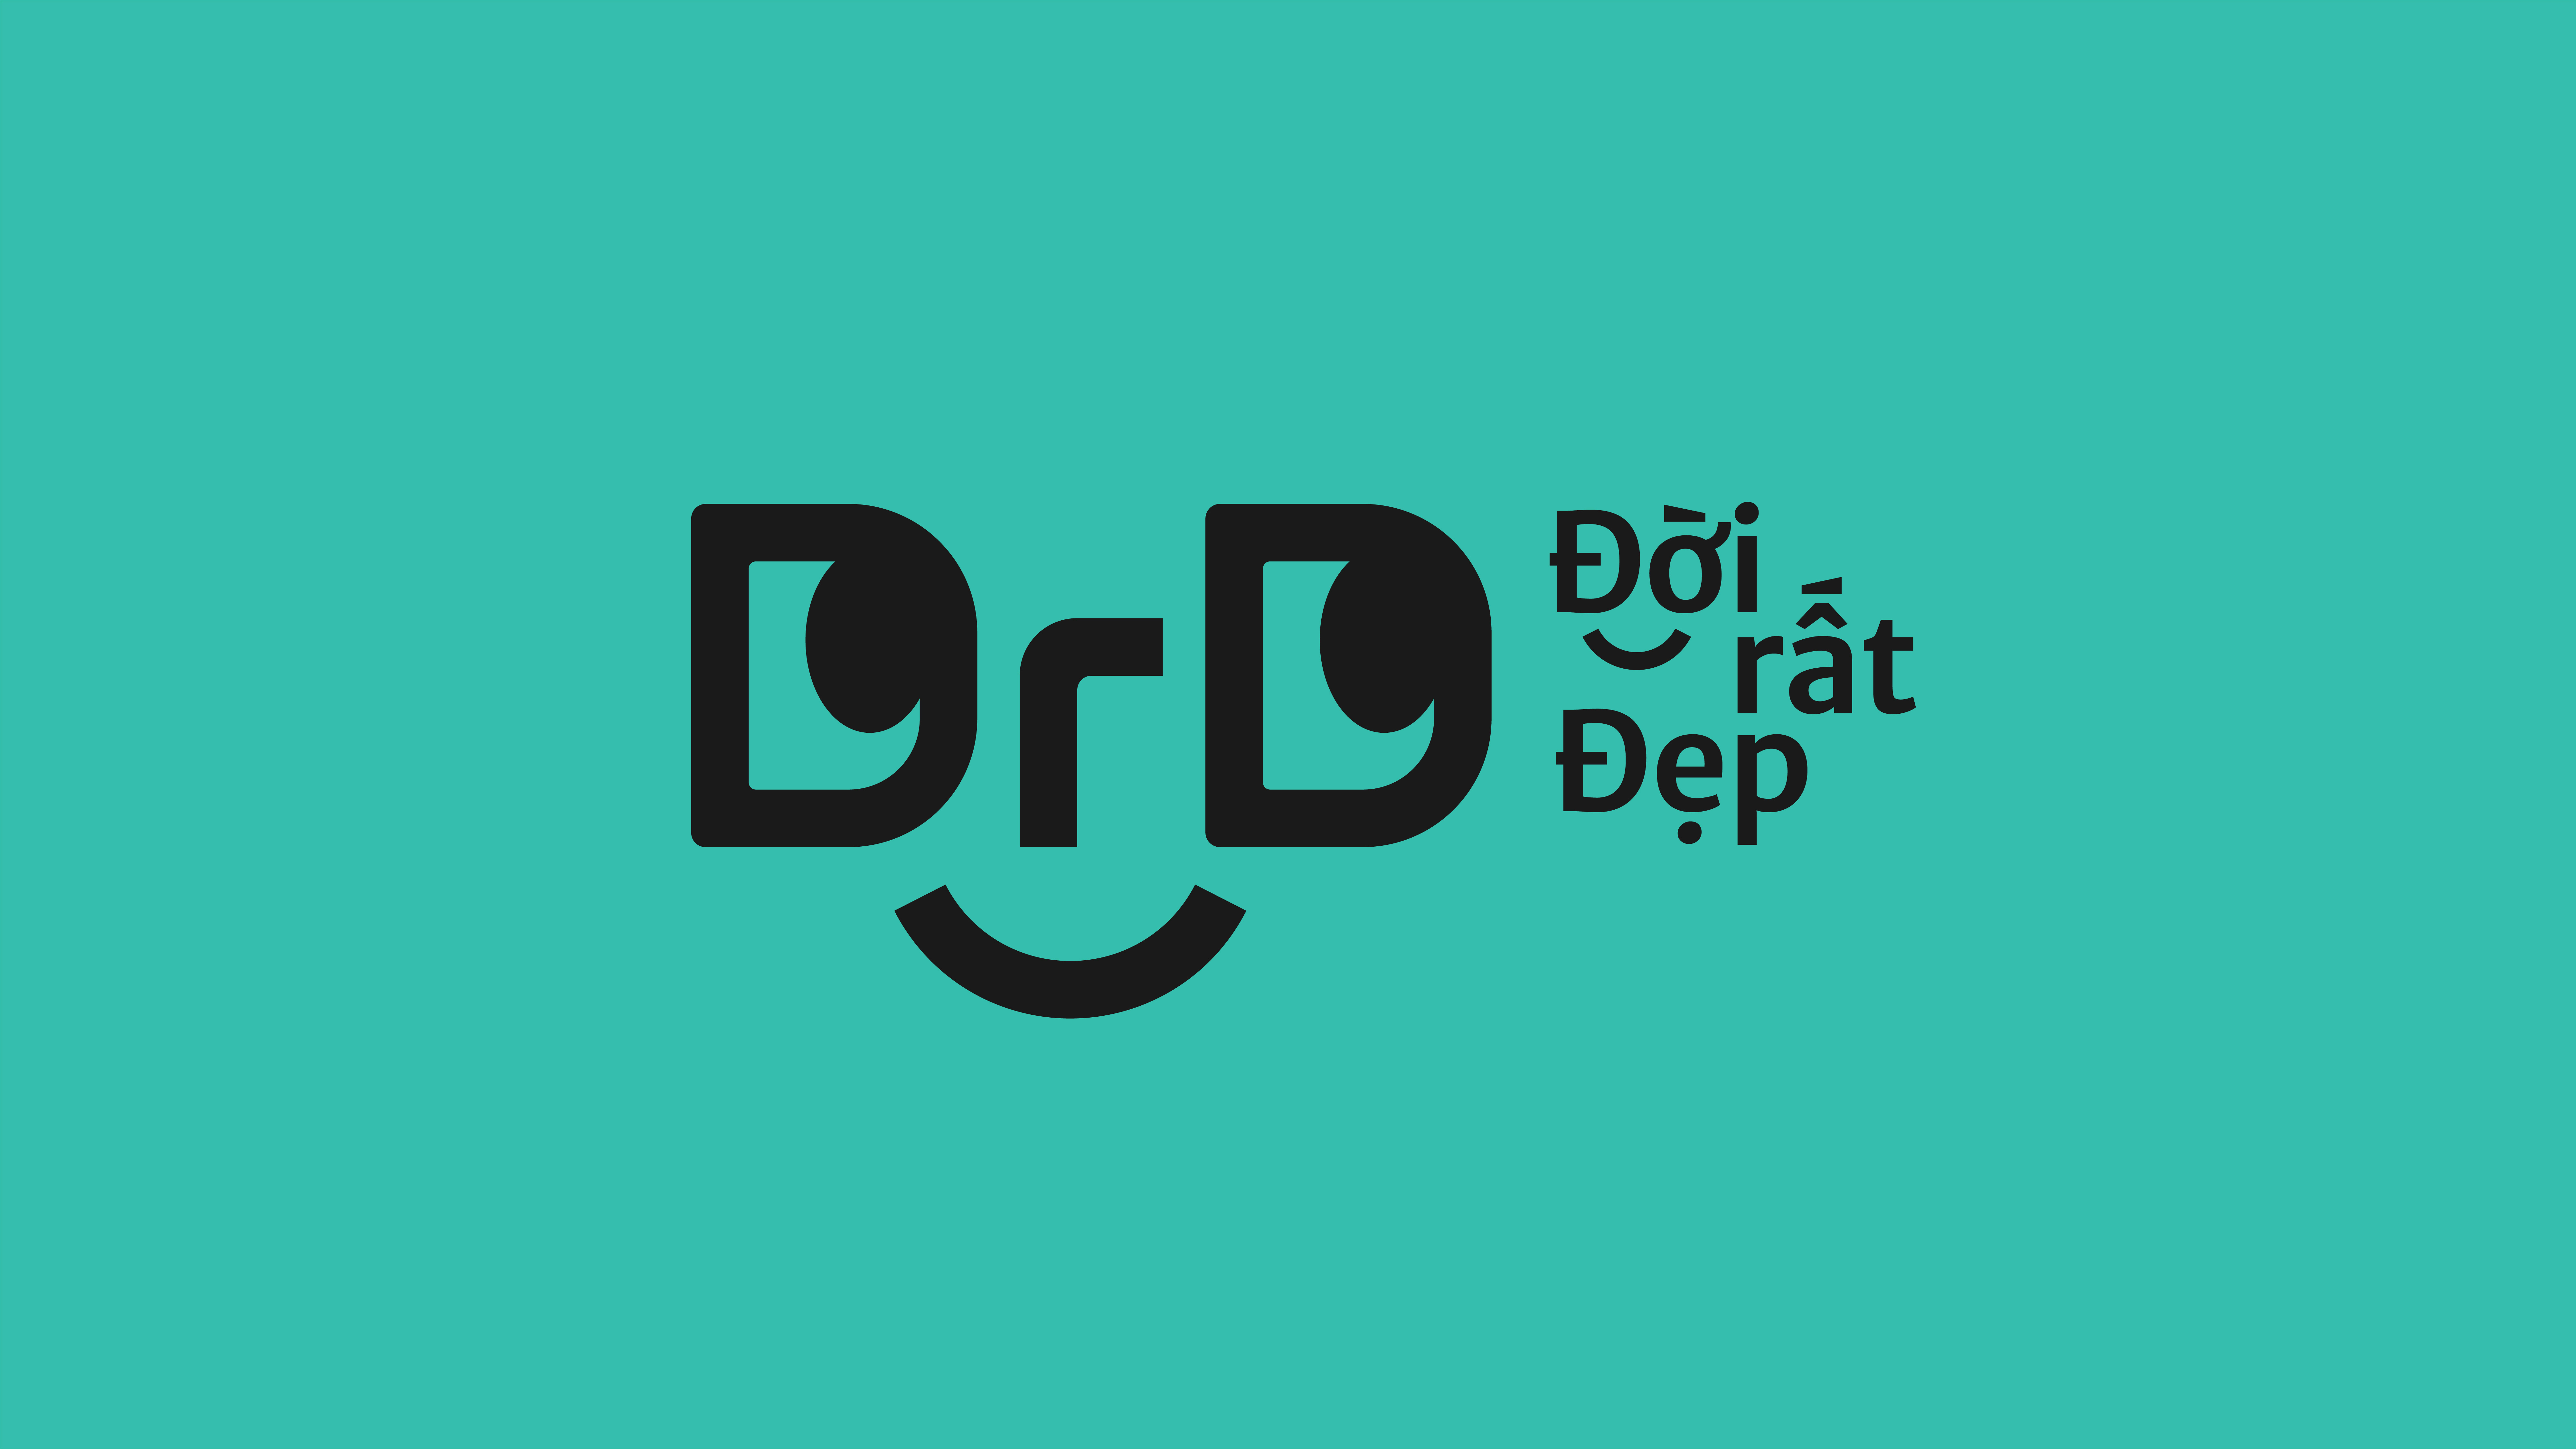 DRD Brand Identity by Nguyễn Phạm Trường An